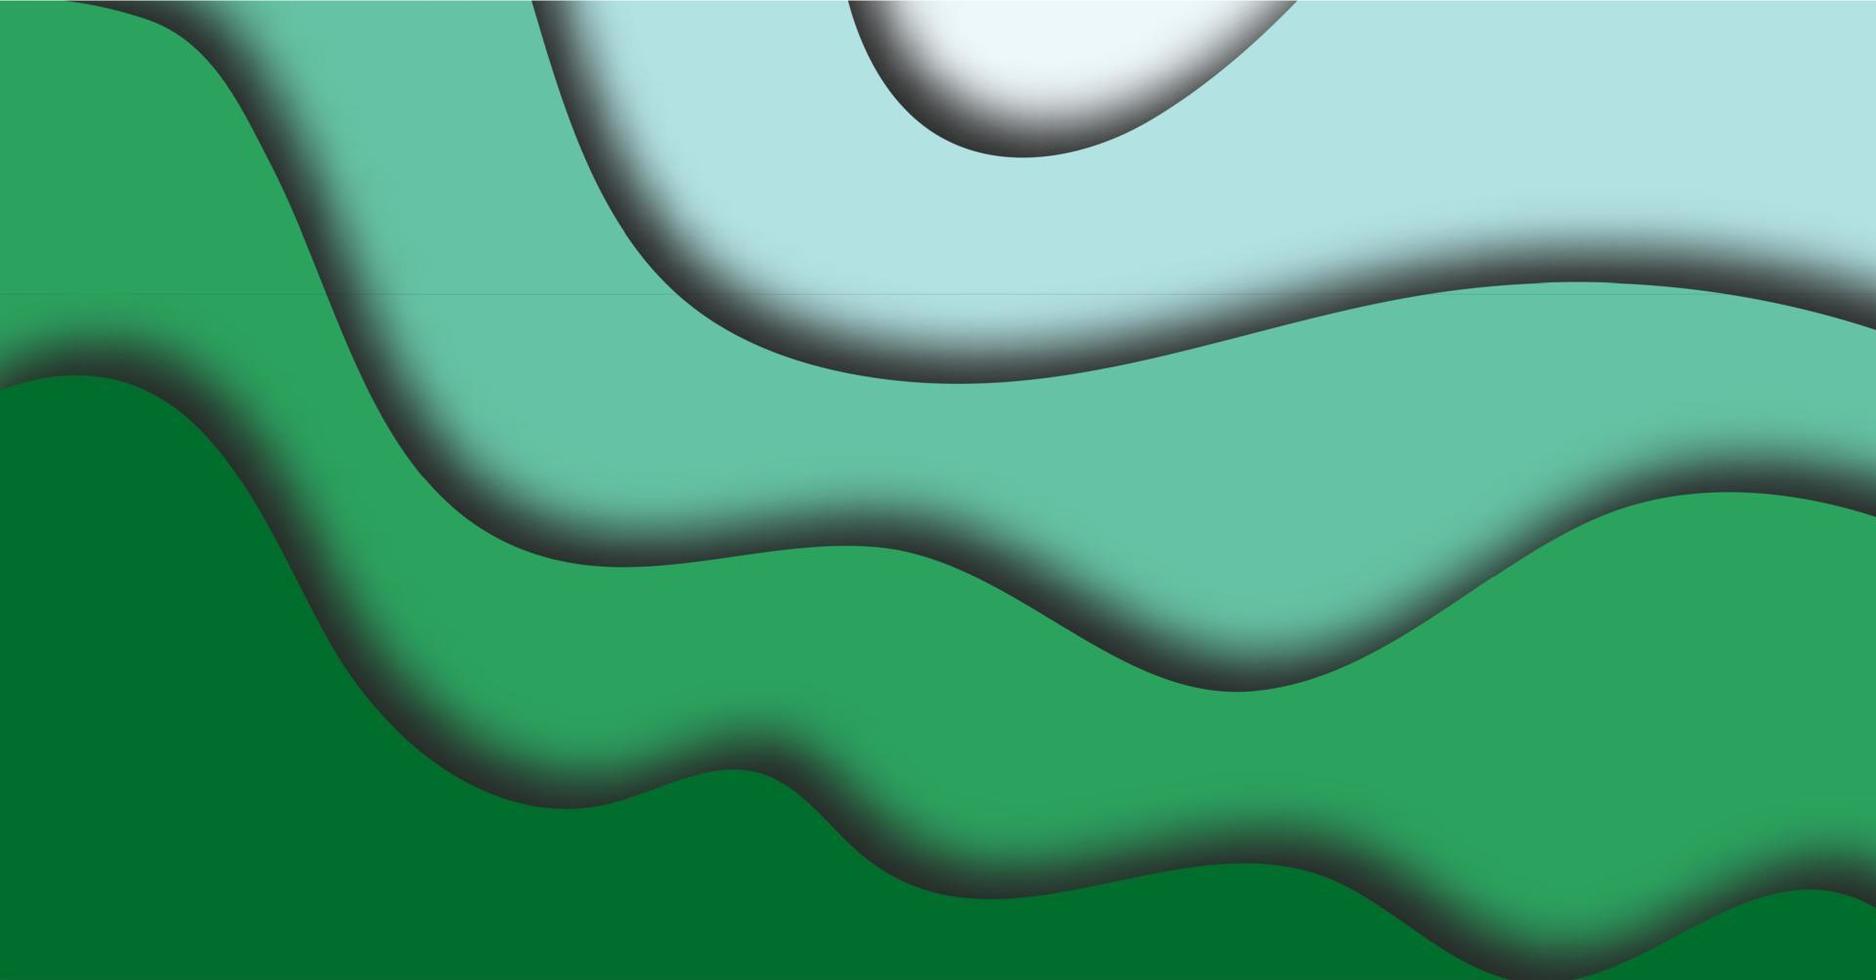 abstract achtergrond met groen papier besnoeiing vormen banier ontwerp. vector illustratie.